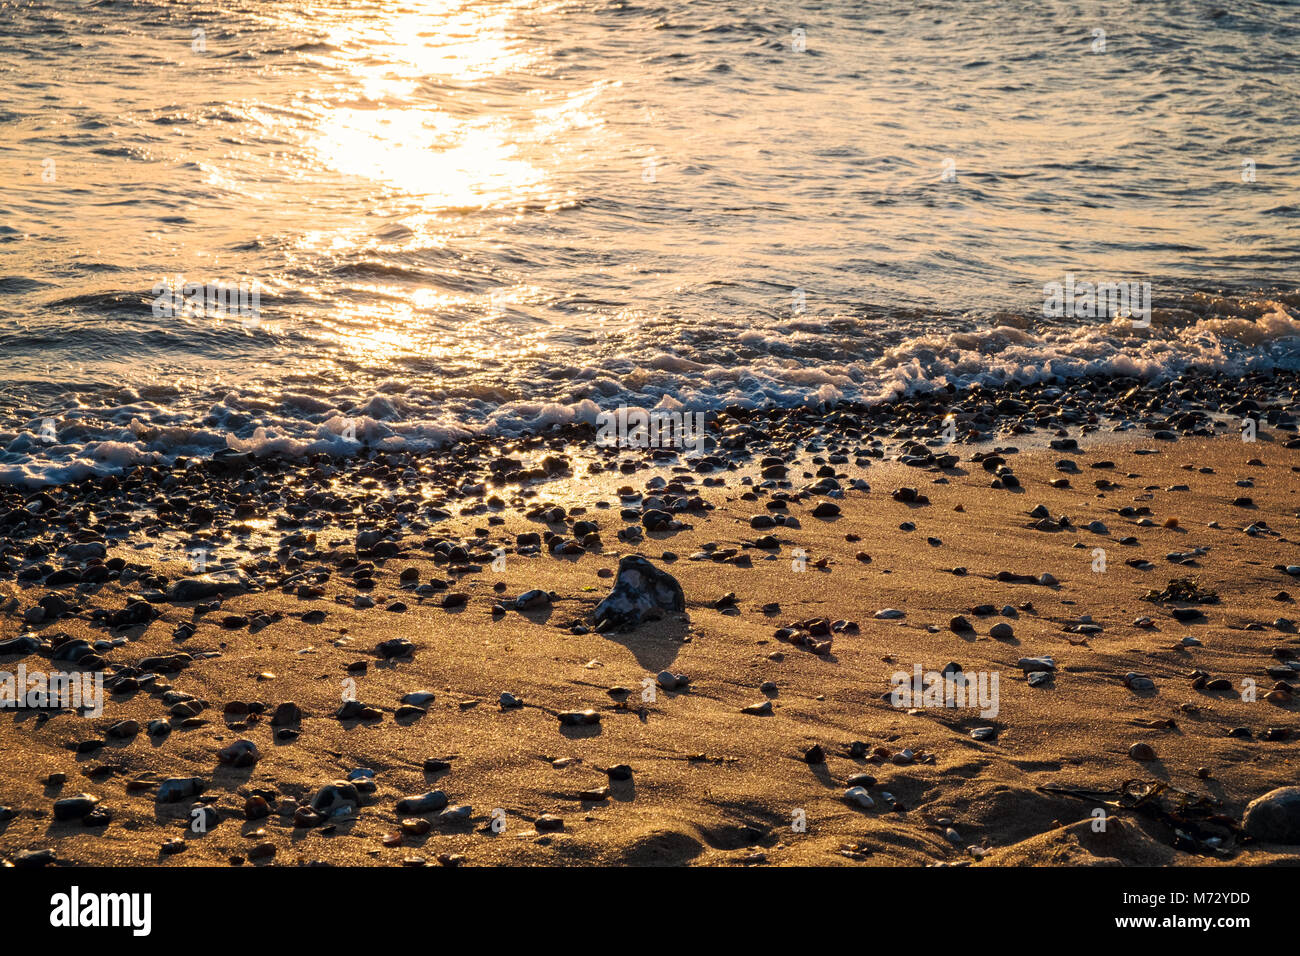 Coucher du soleil à la plage près de la sept Sœurs, Jalhay, East Sussex, Angleterre Banque D'Images